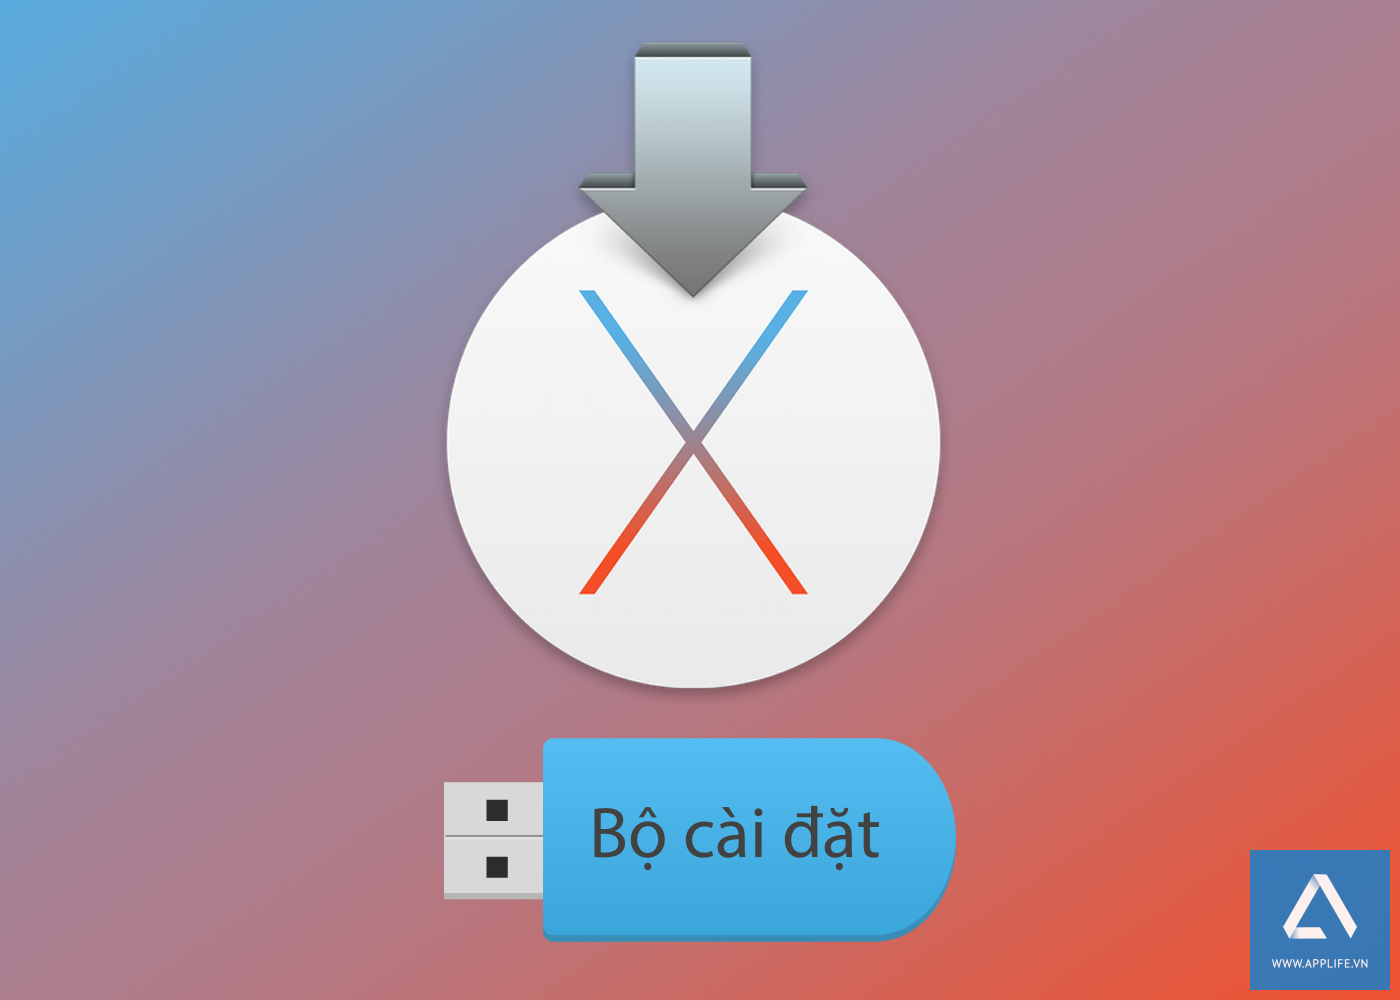 OS X El Capitan Installer